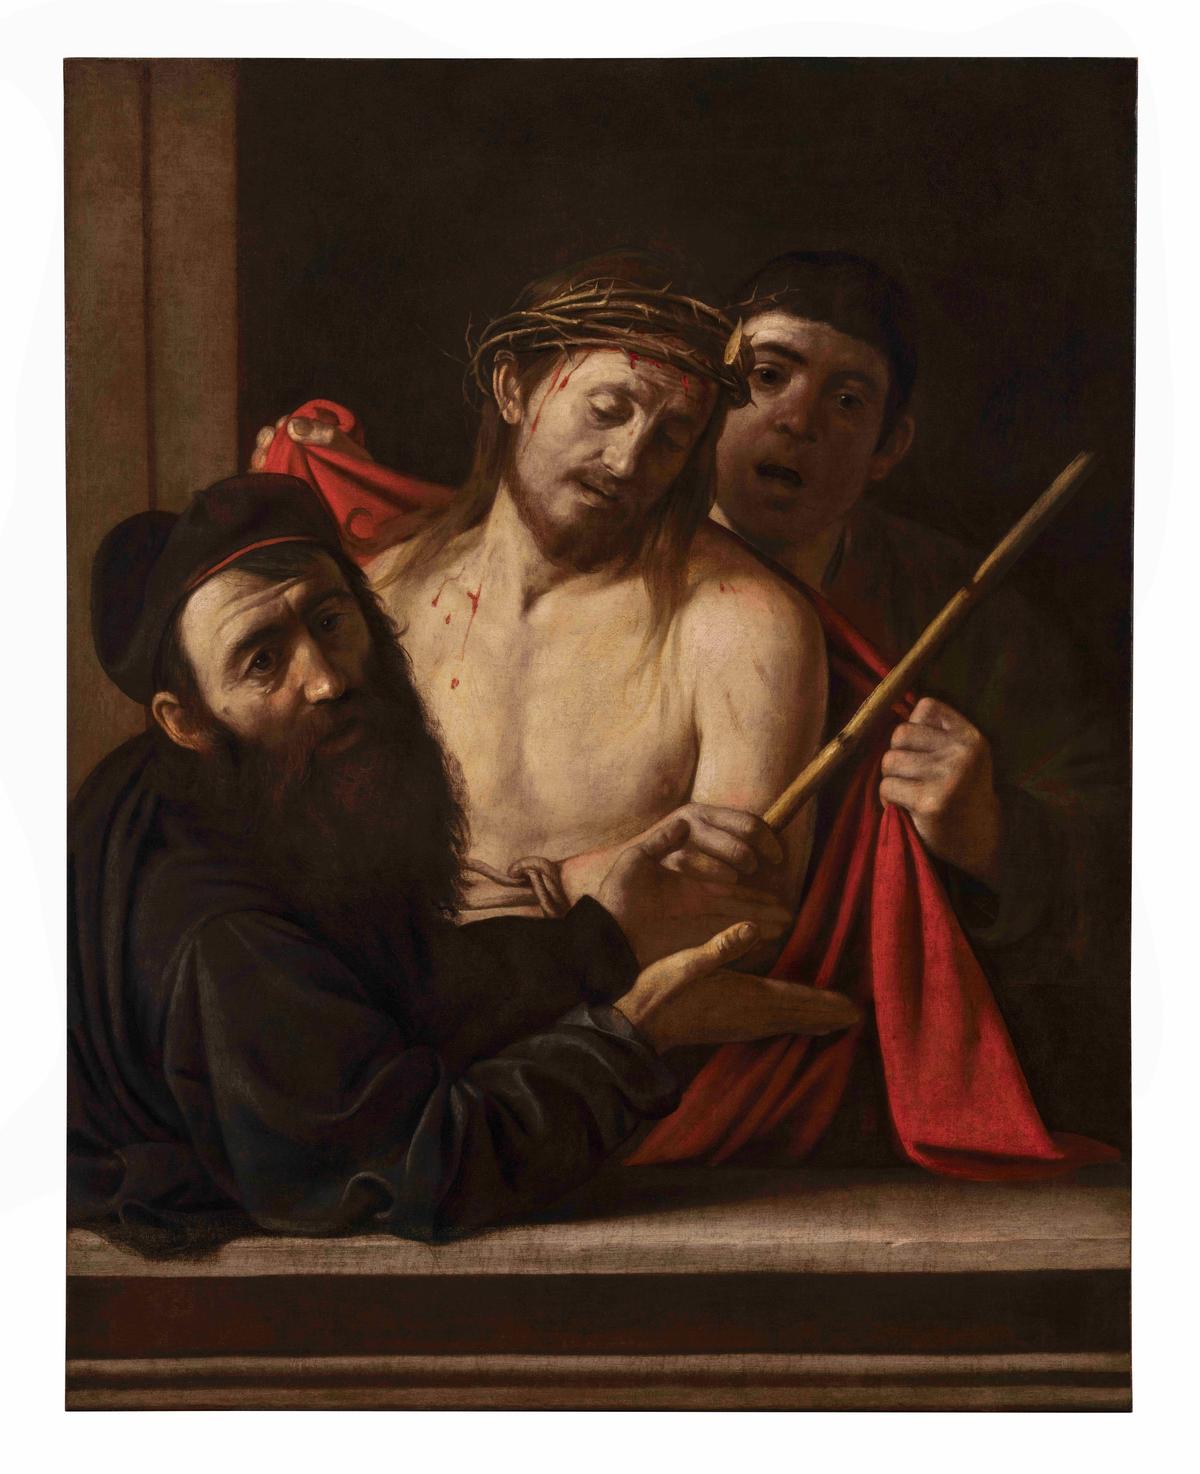 Michelangelo Merisi (known as Caravaggio), Ecce Homo, around 1605-09

Image courtesy of private collection